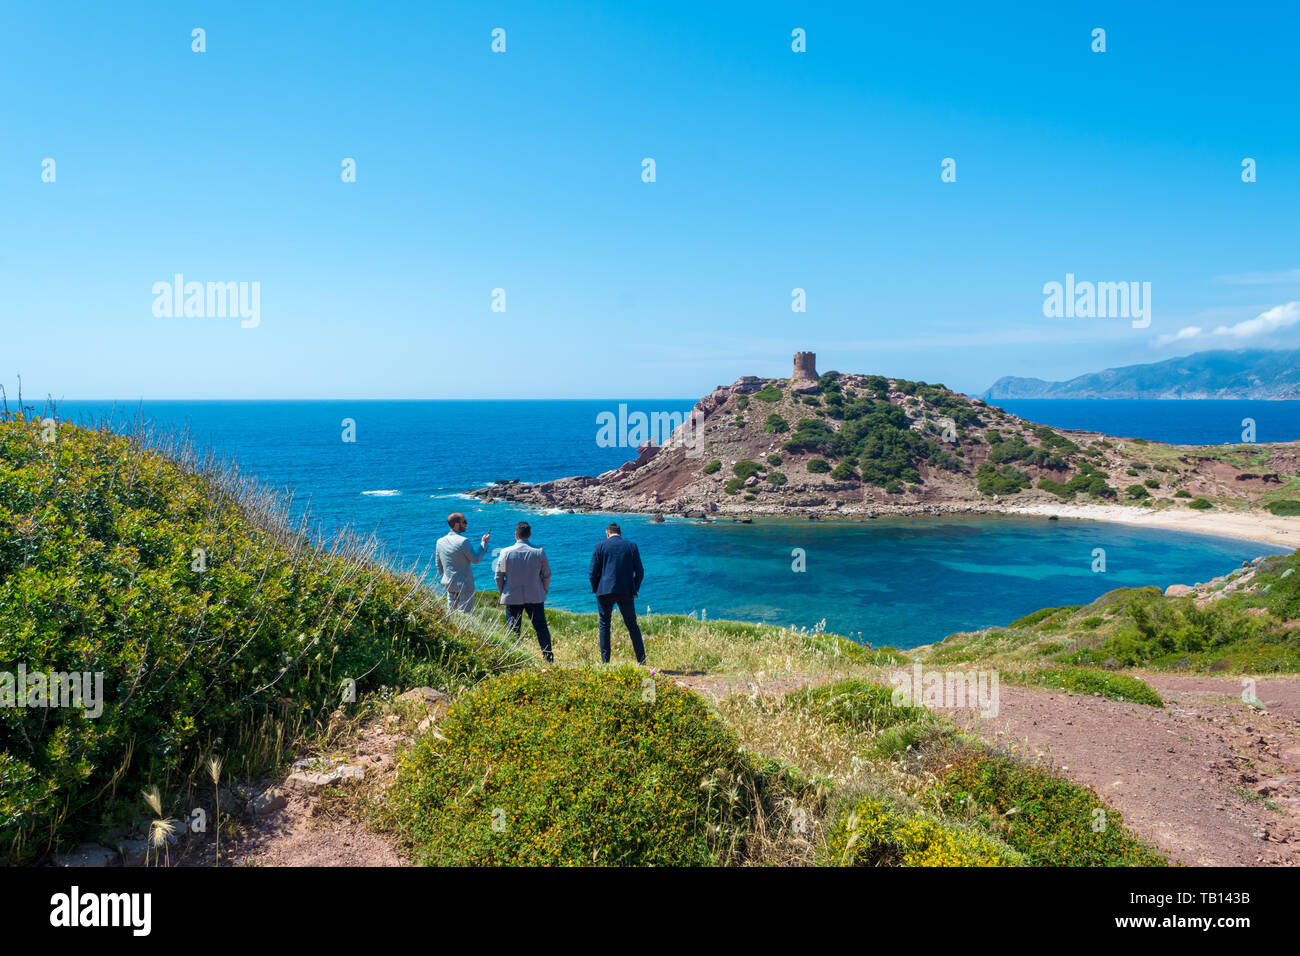 Tre imprenditori guardano al mare in Sardegna, nel porticciolo golfo, durante una pausa dal lavoro Foto Stock